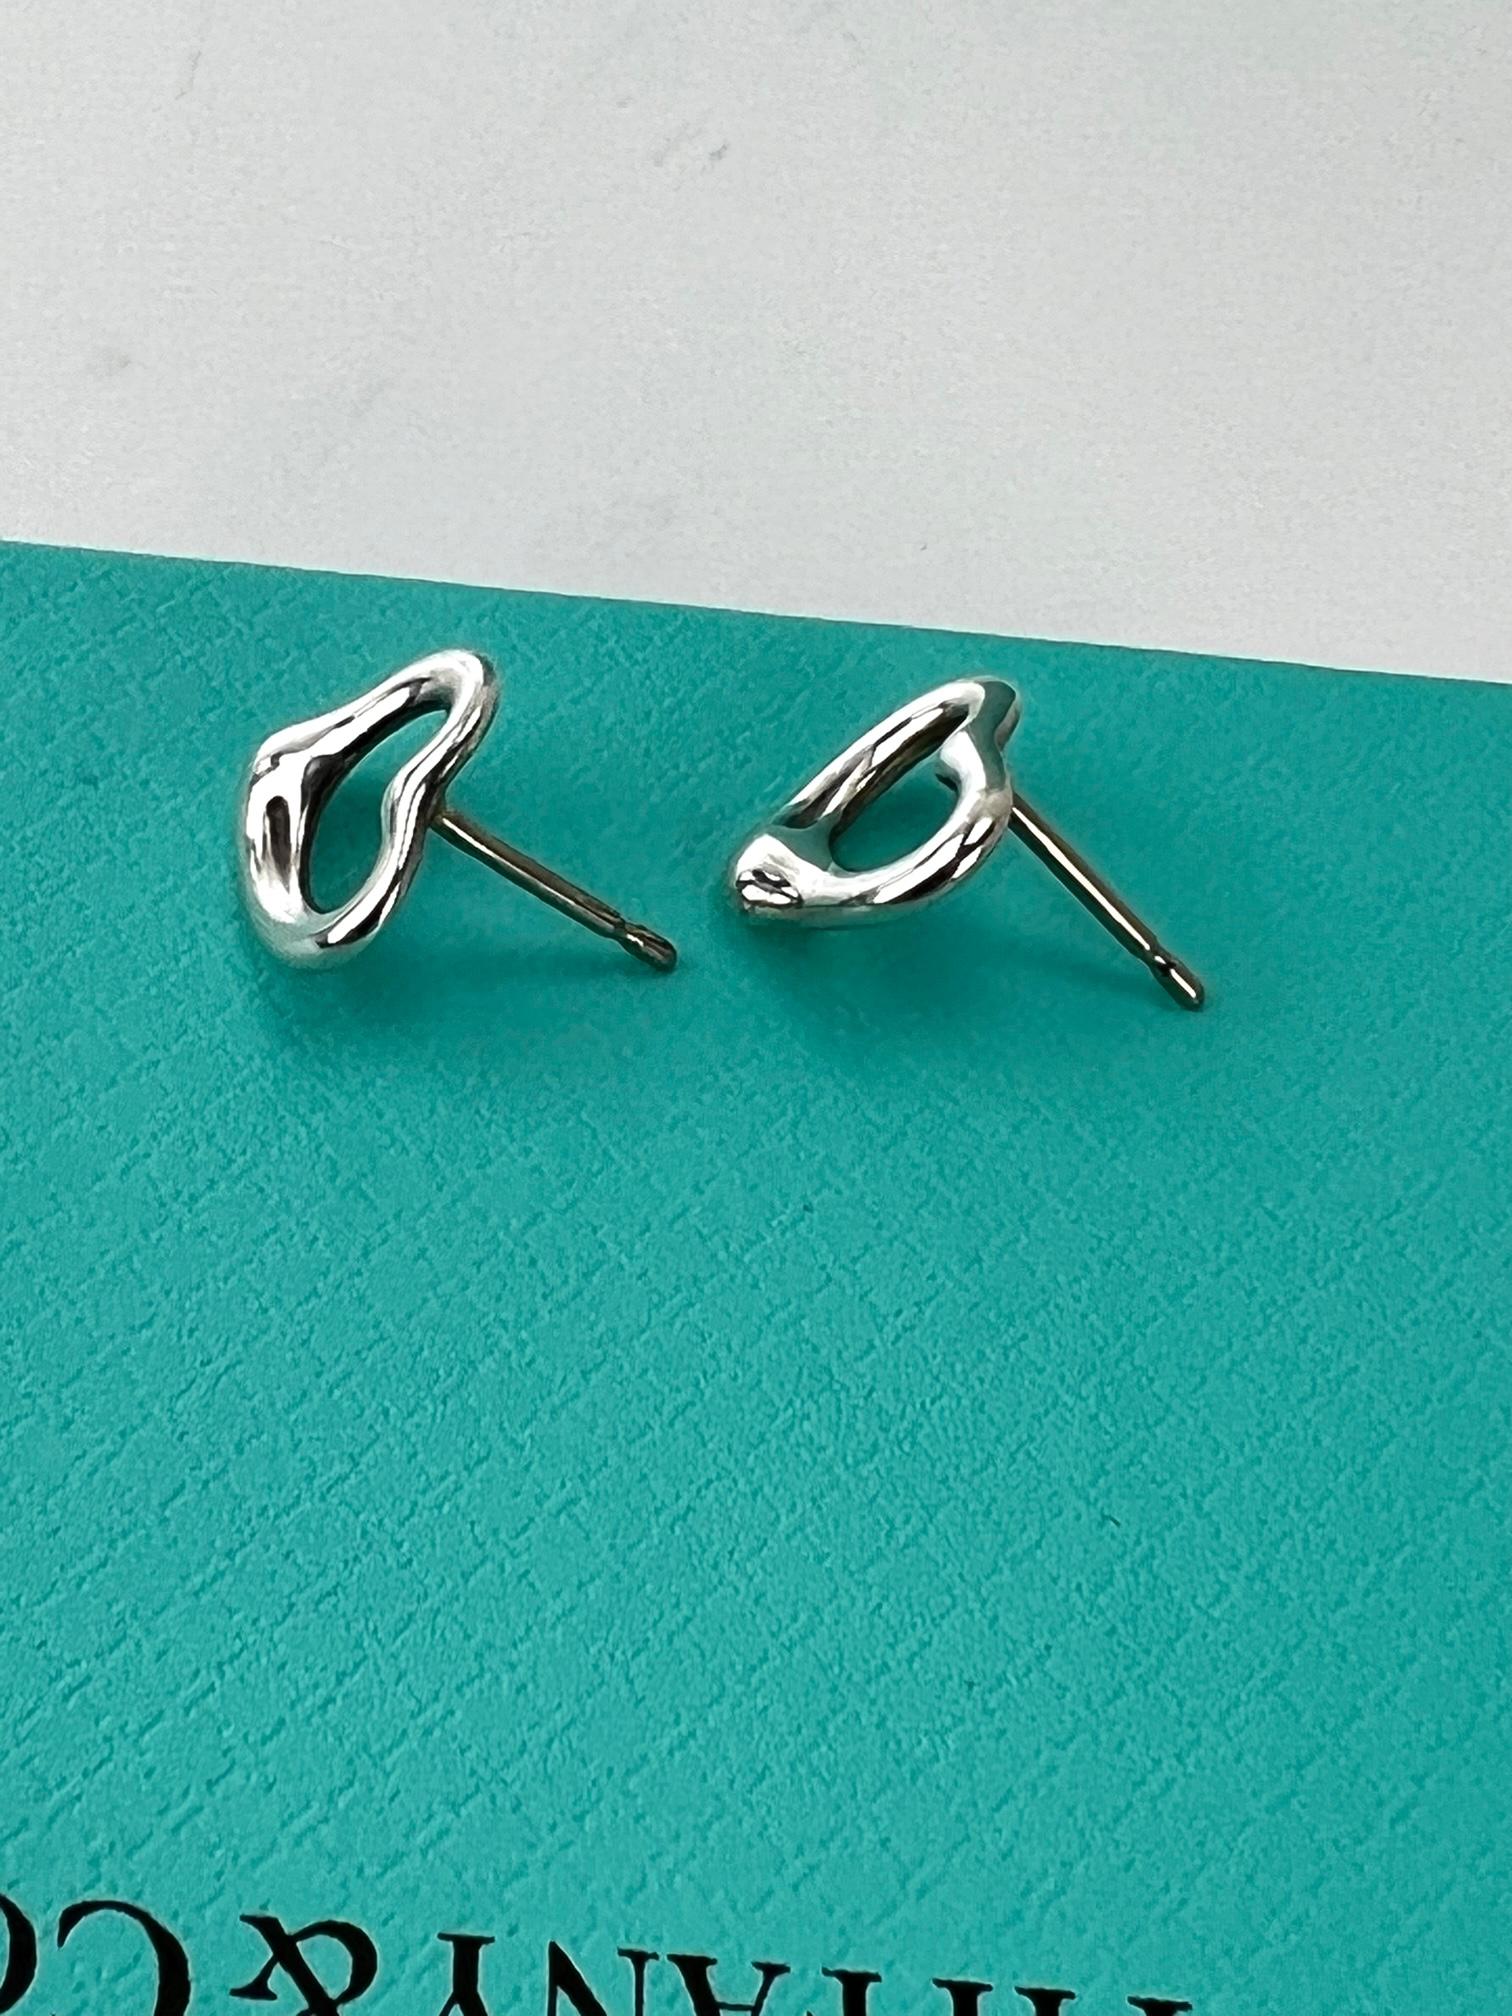  TIFFANY Open Heart Stud Earrings in Sterling Silver 925 Elsa Peretti  3